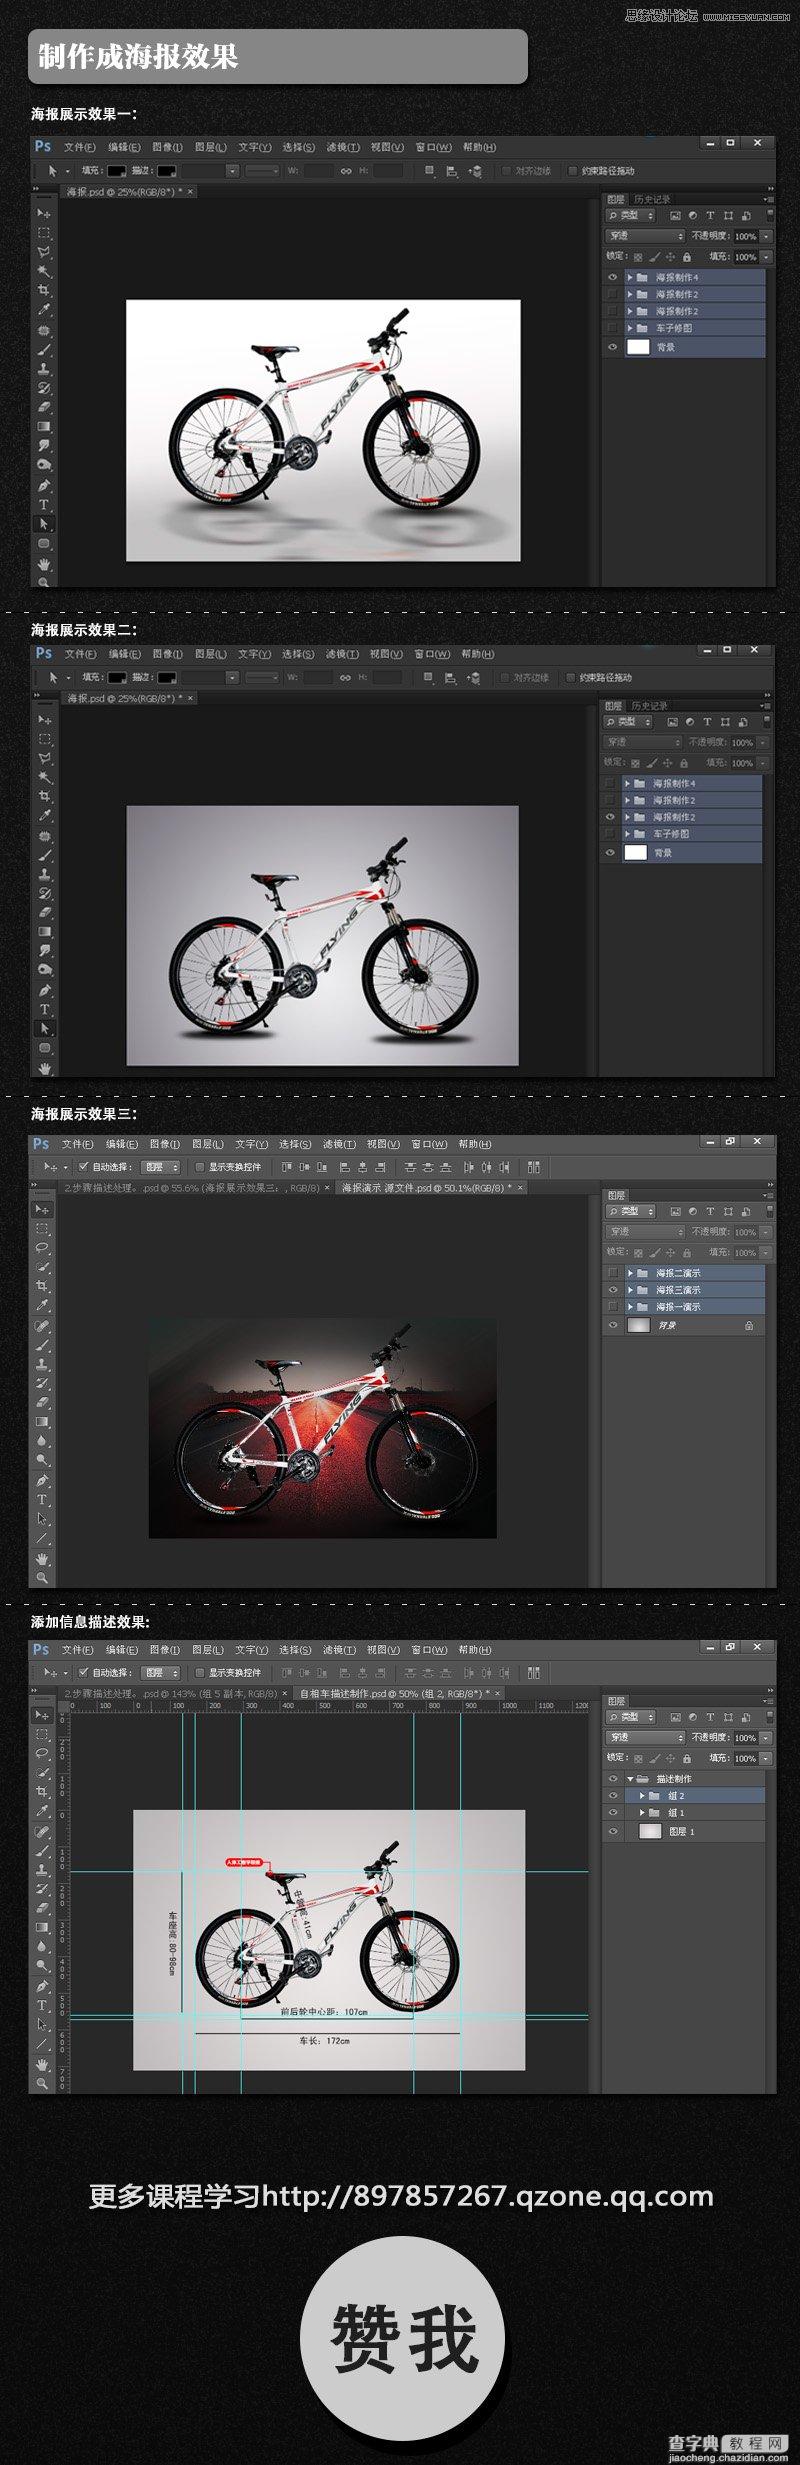 详细解析电商自行车产品Photoshop修图过程3